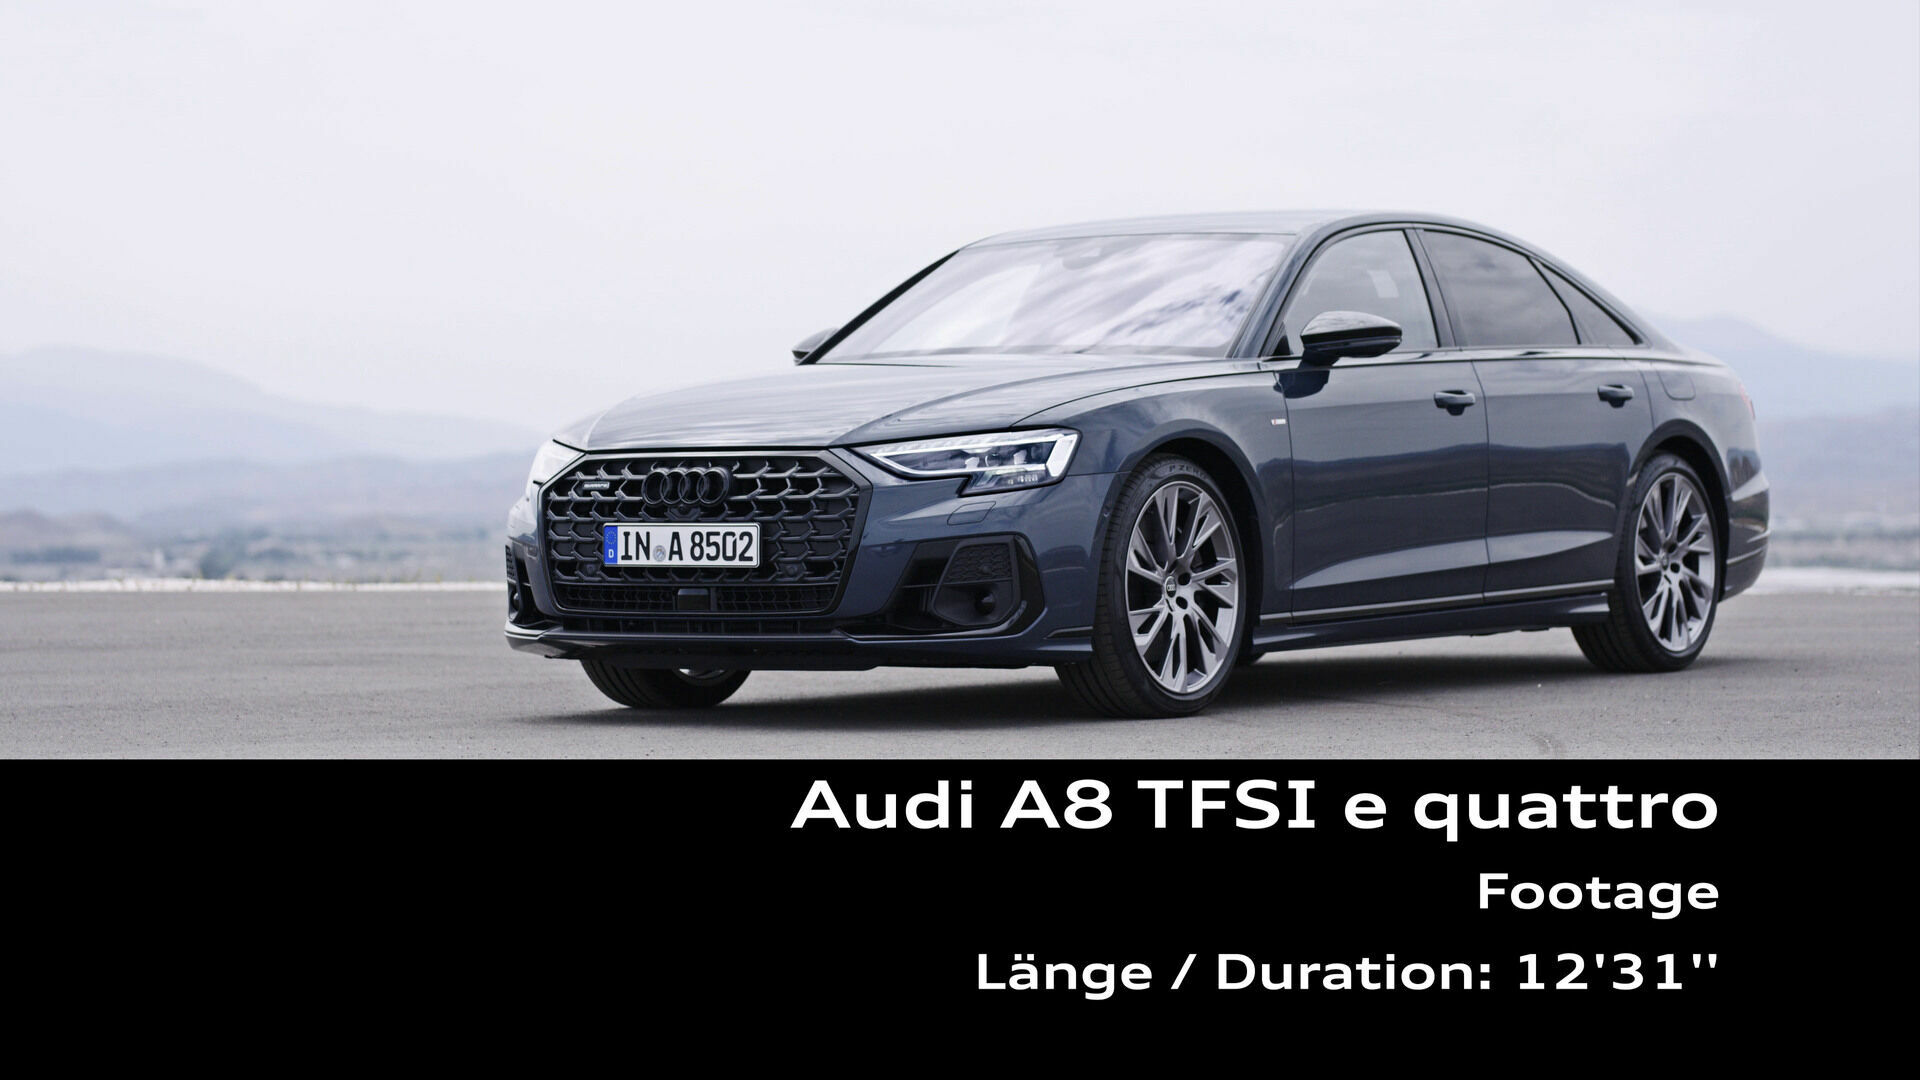 Footage: Audi A8 60 TFSI e quattro (in Spanien)